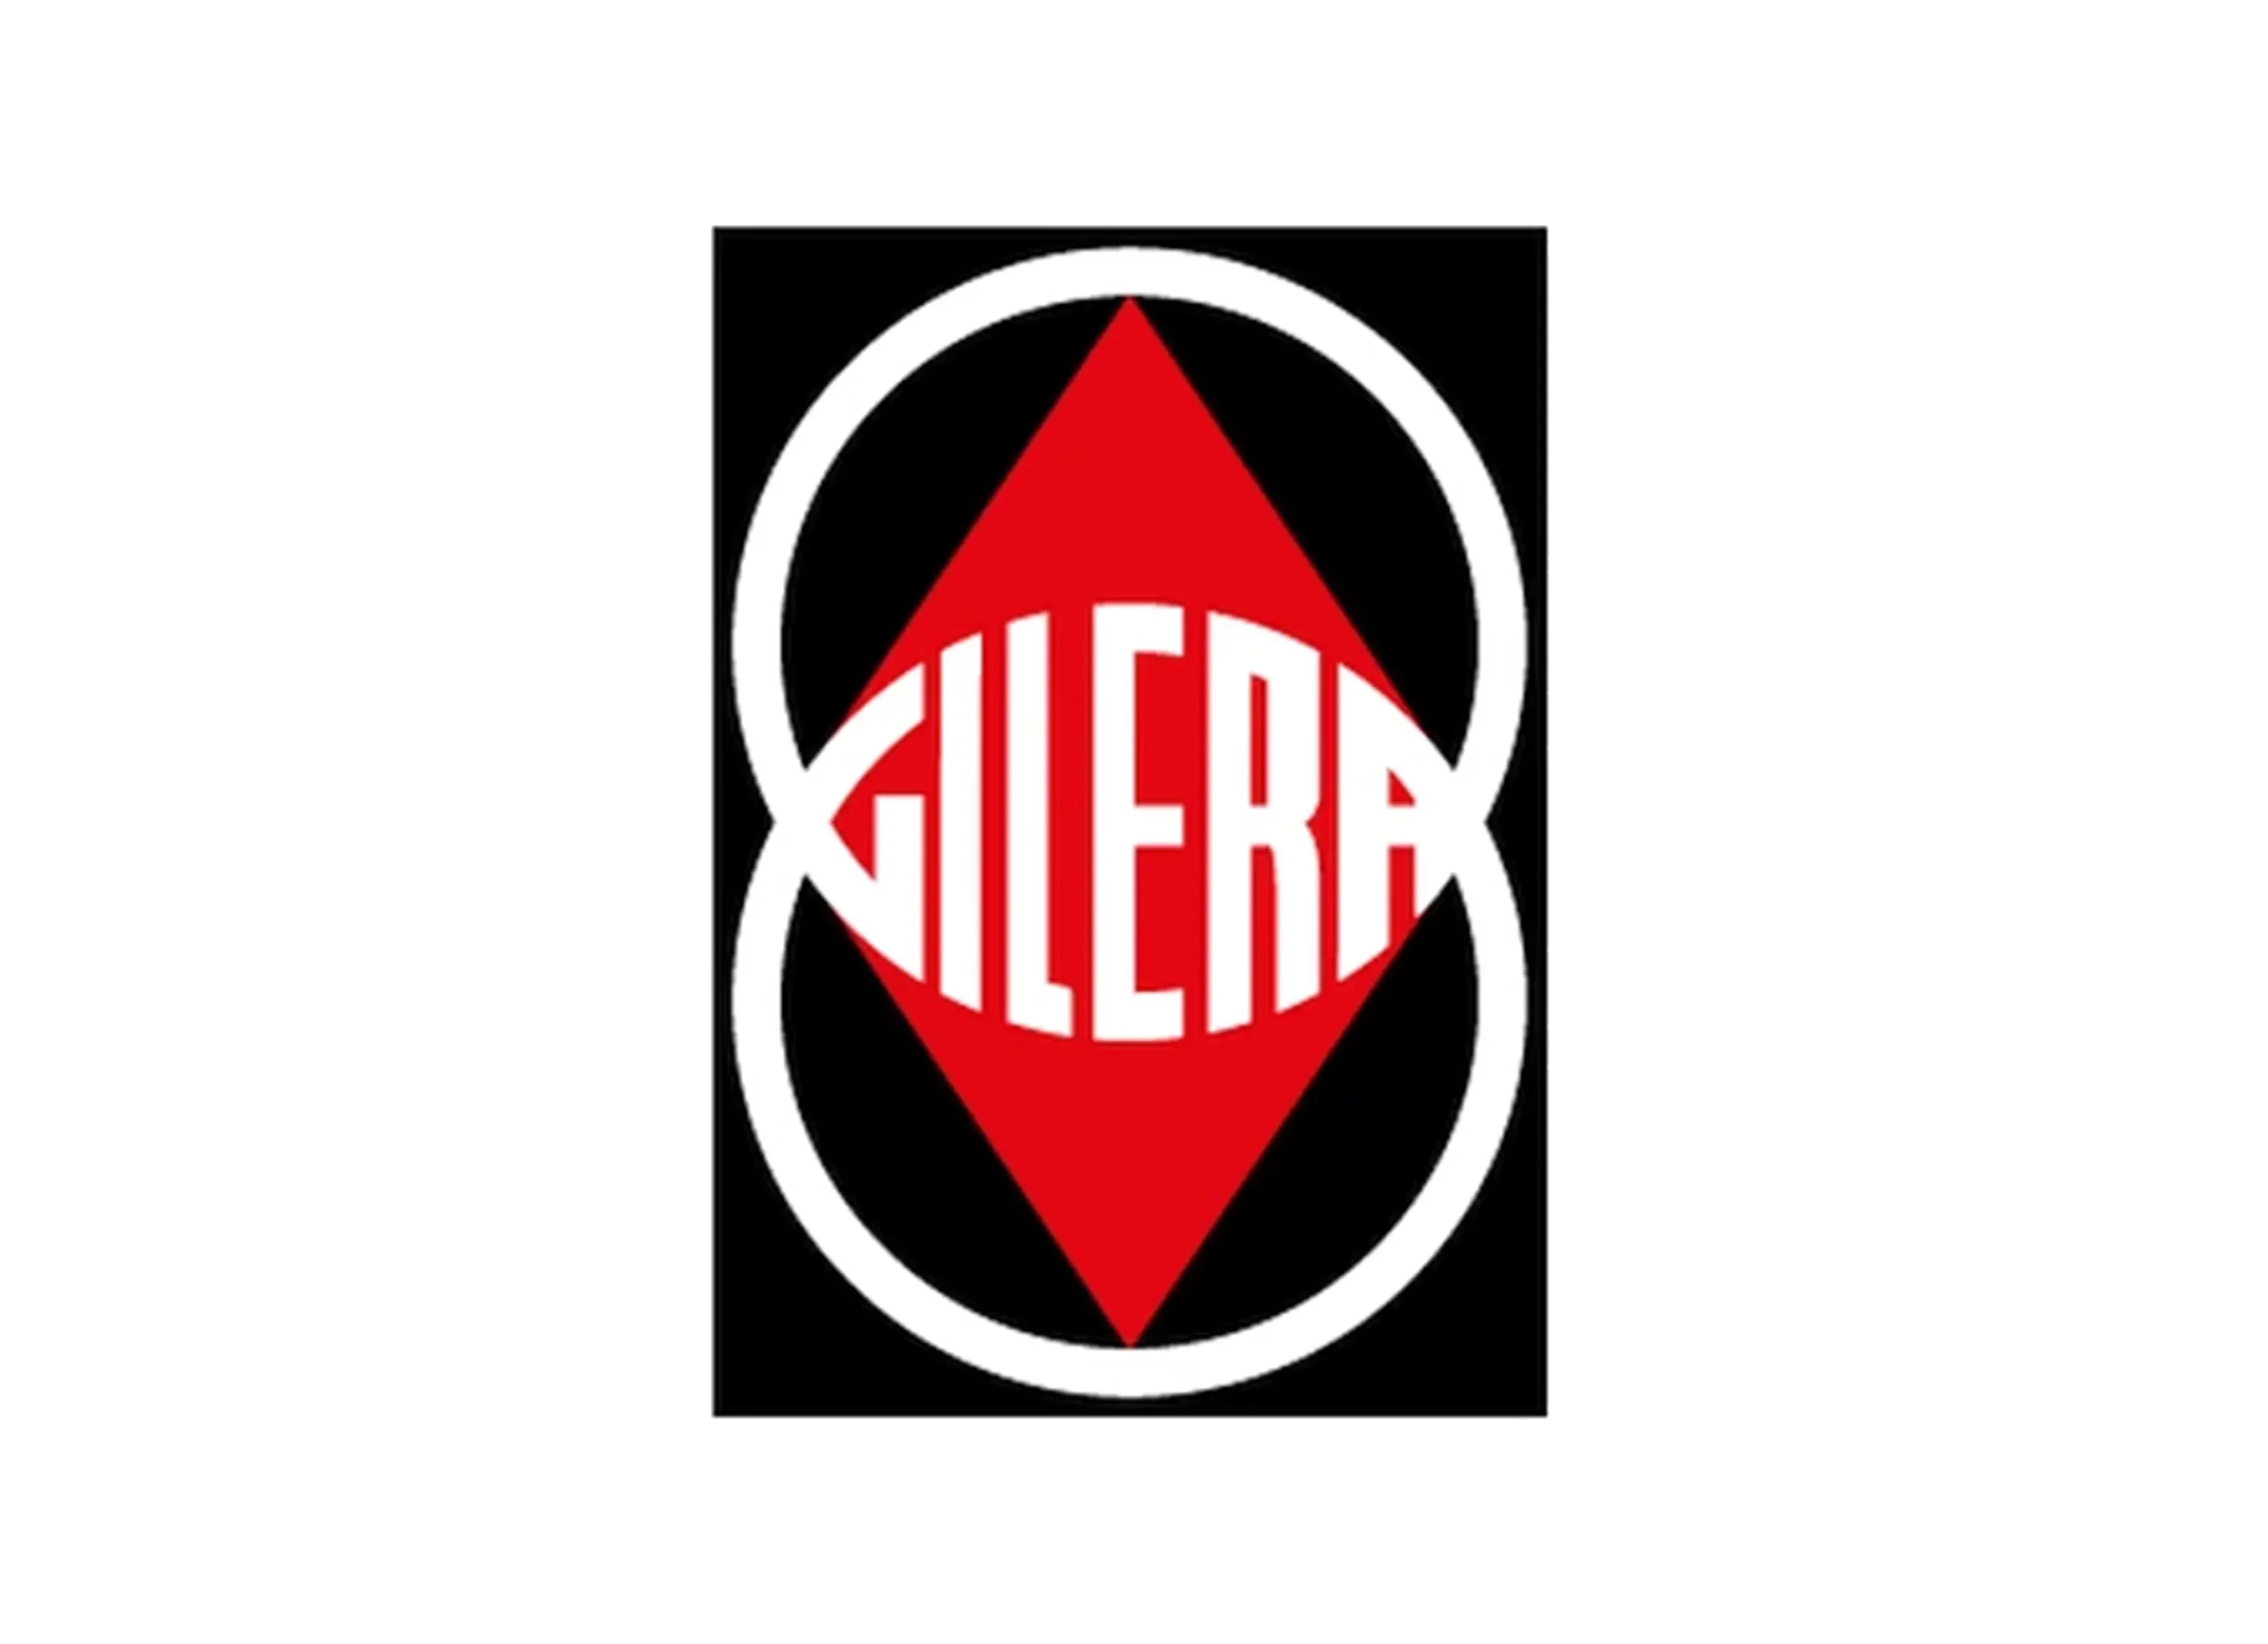 Gilera logo 1956-1993